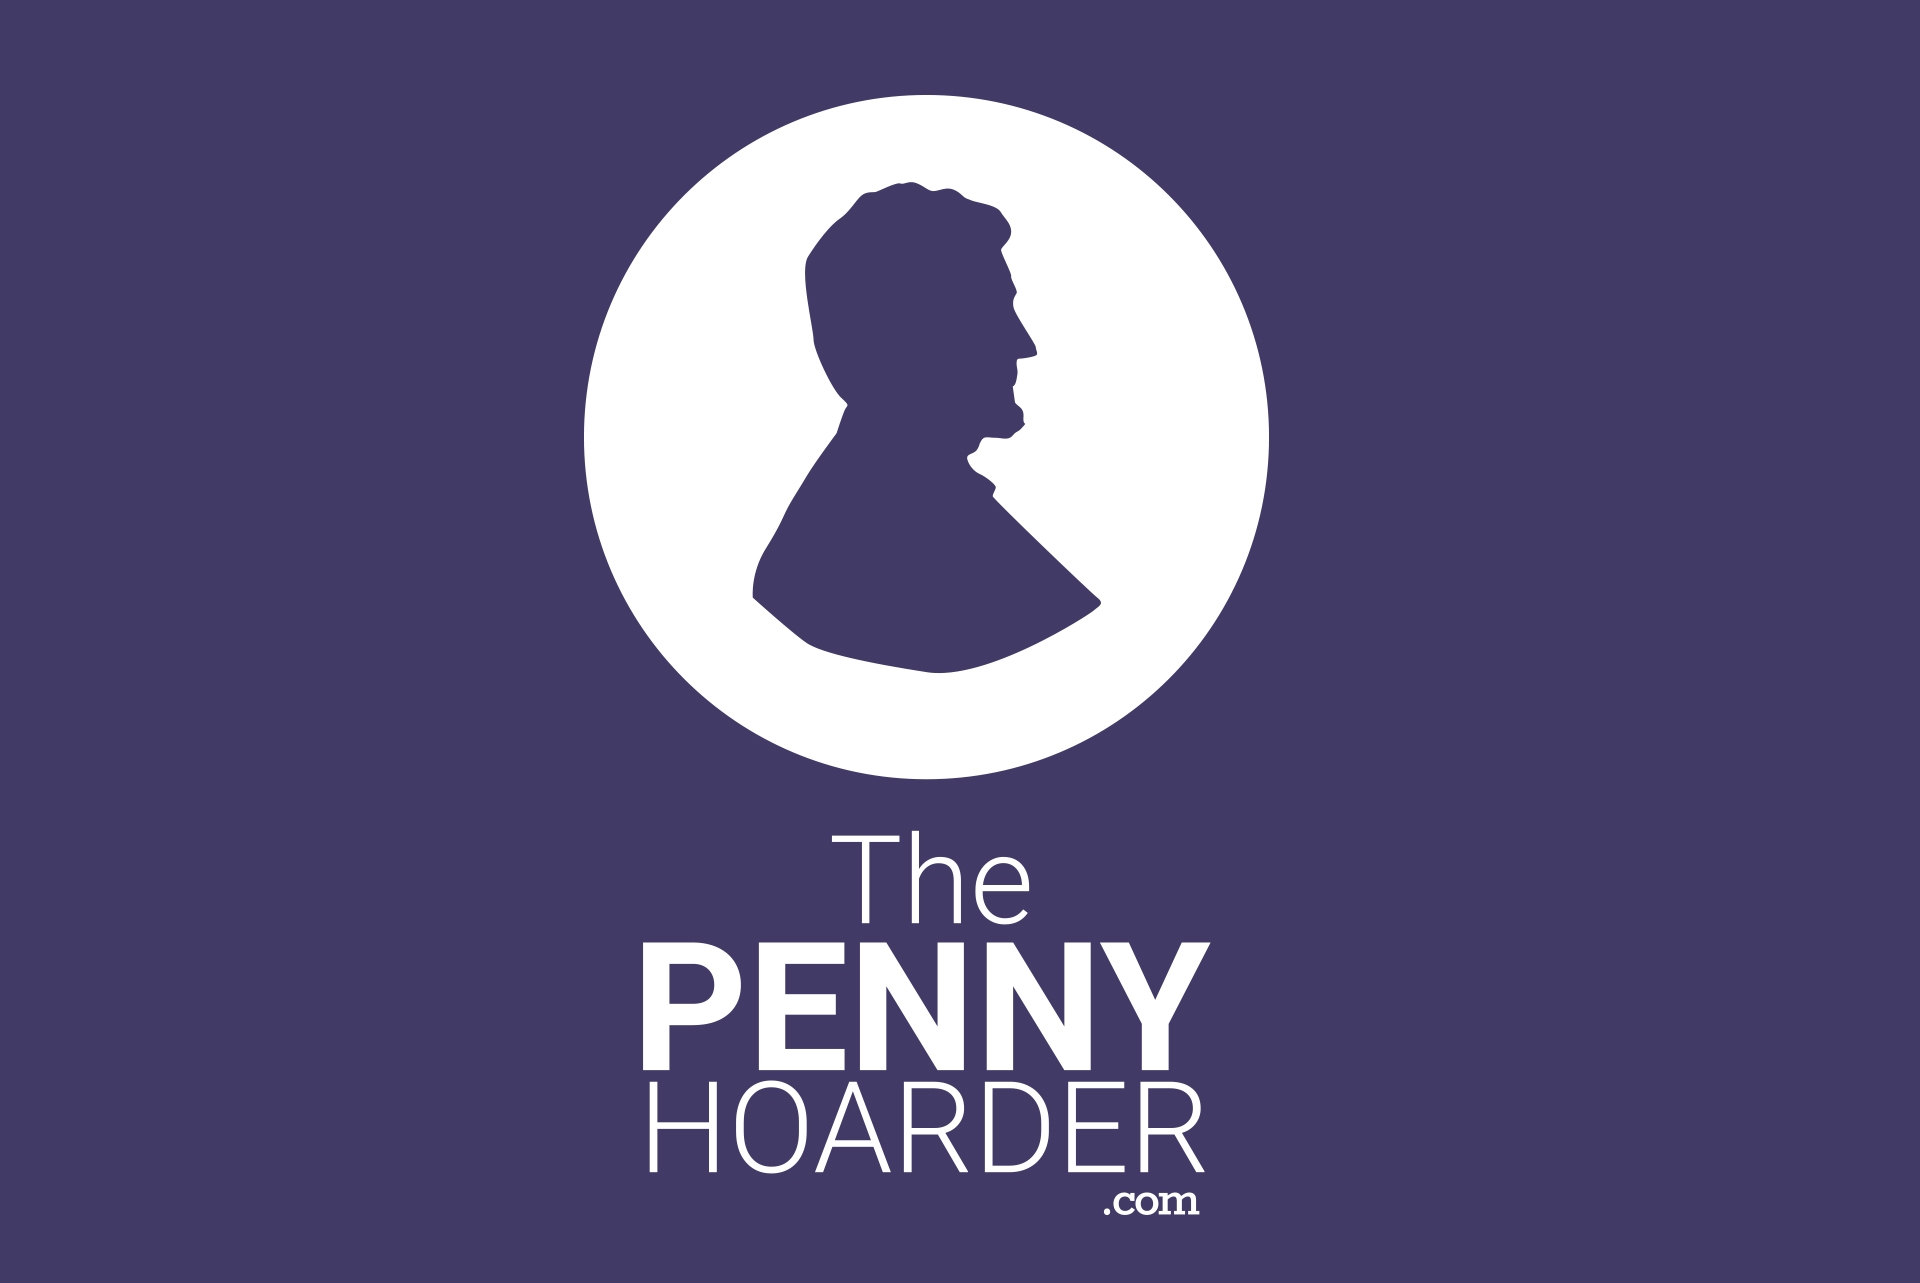 The Penny Hoarder Company Logo